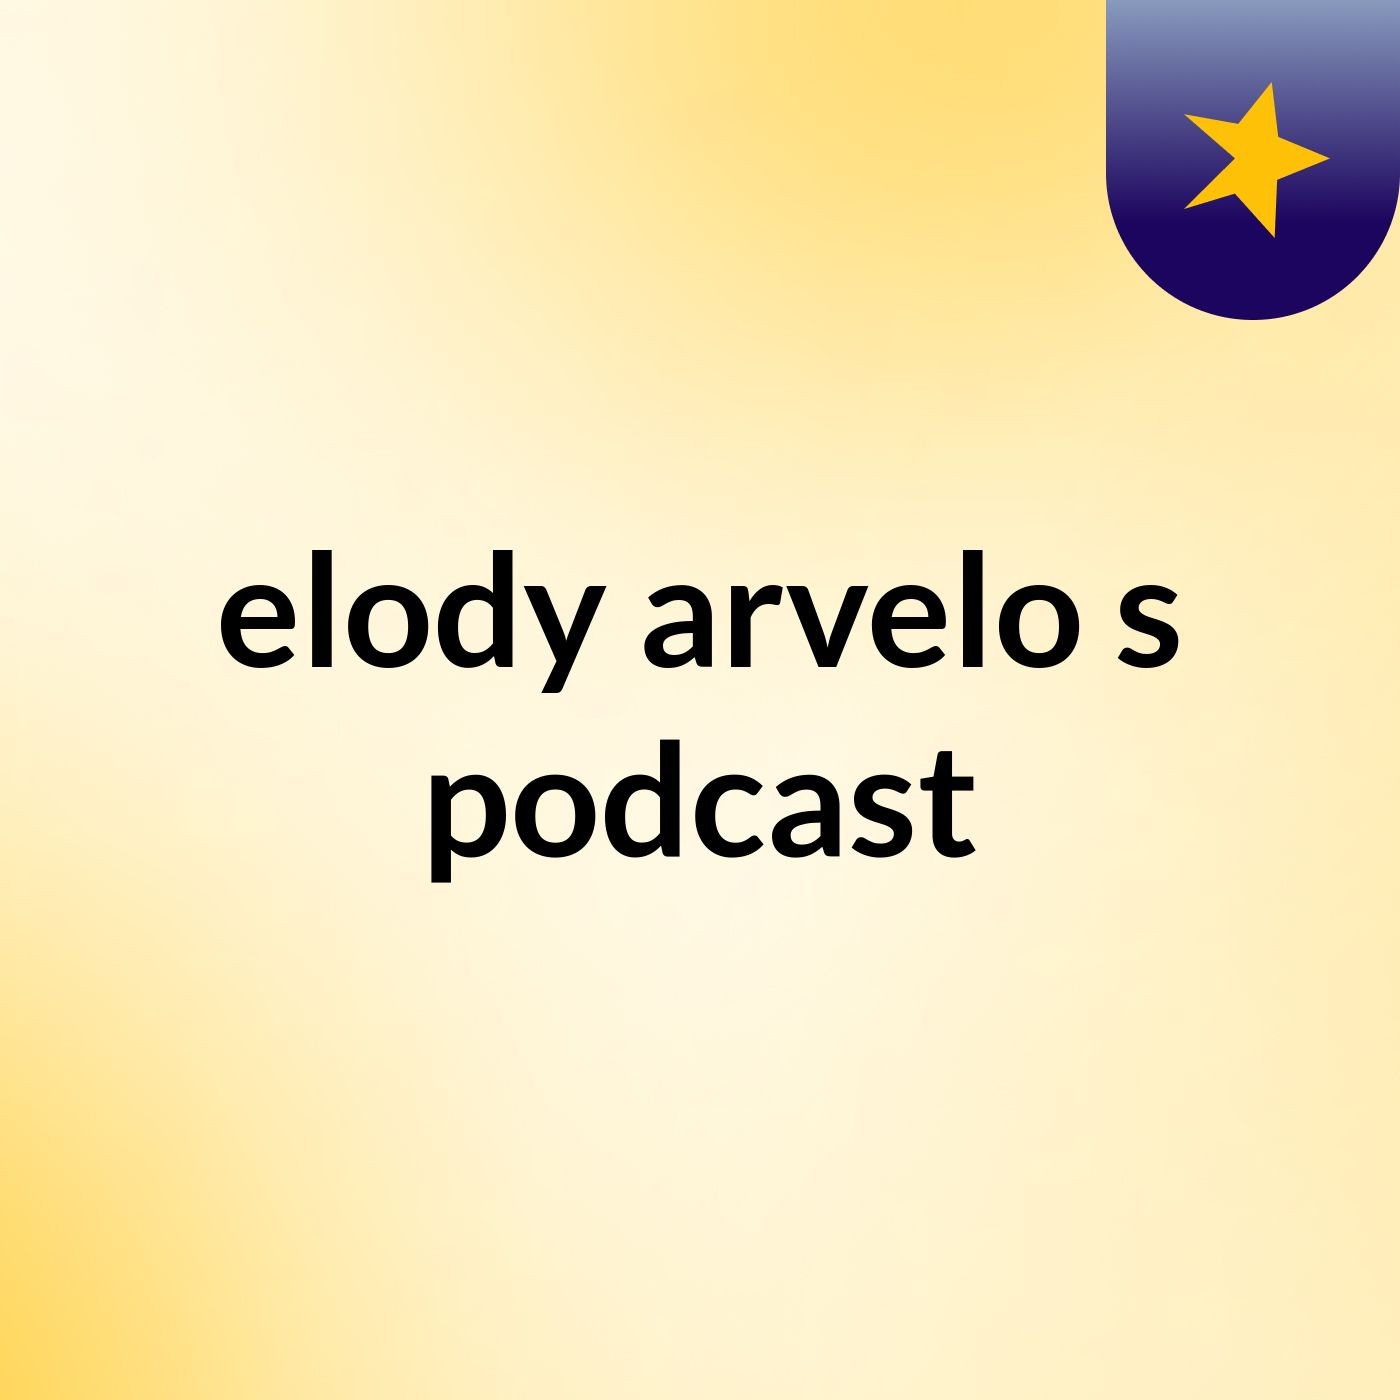 elody arvelo's podcast